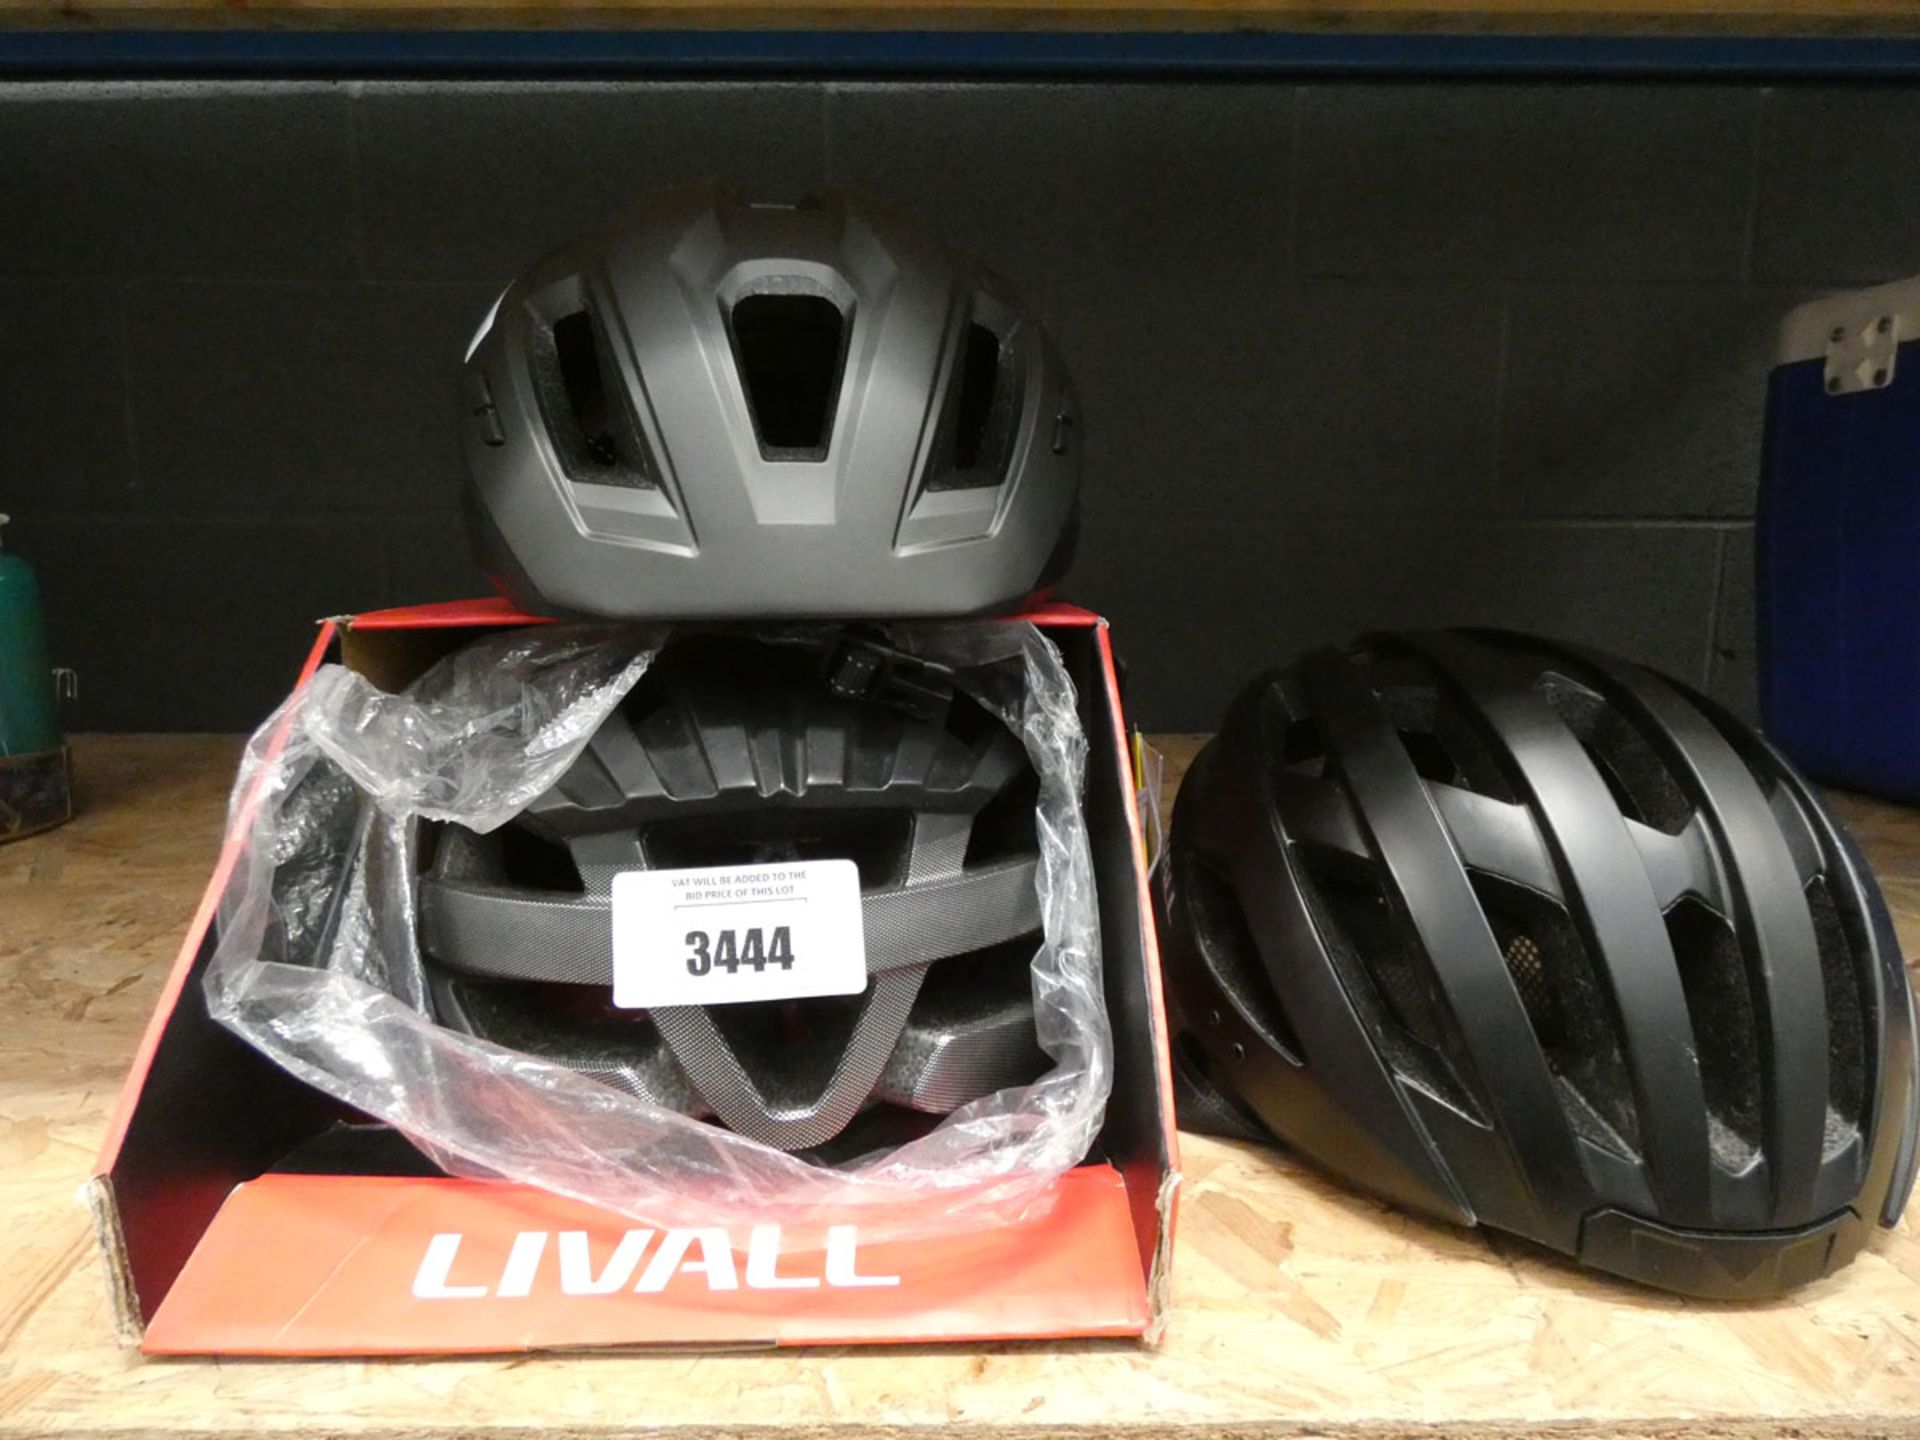 Three Livall cycle helmets